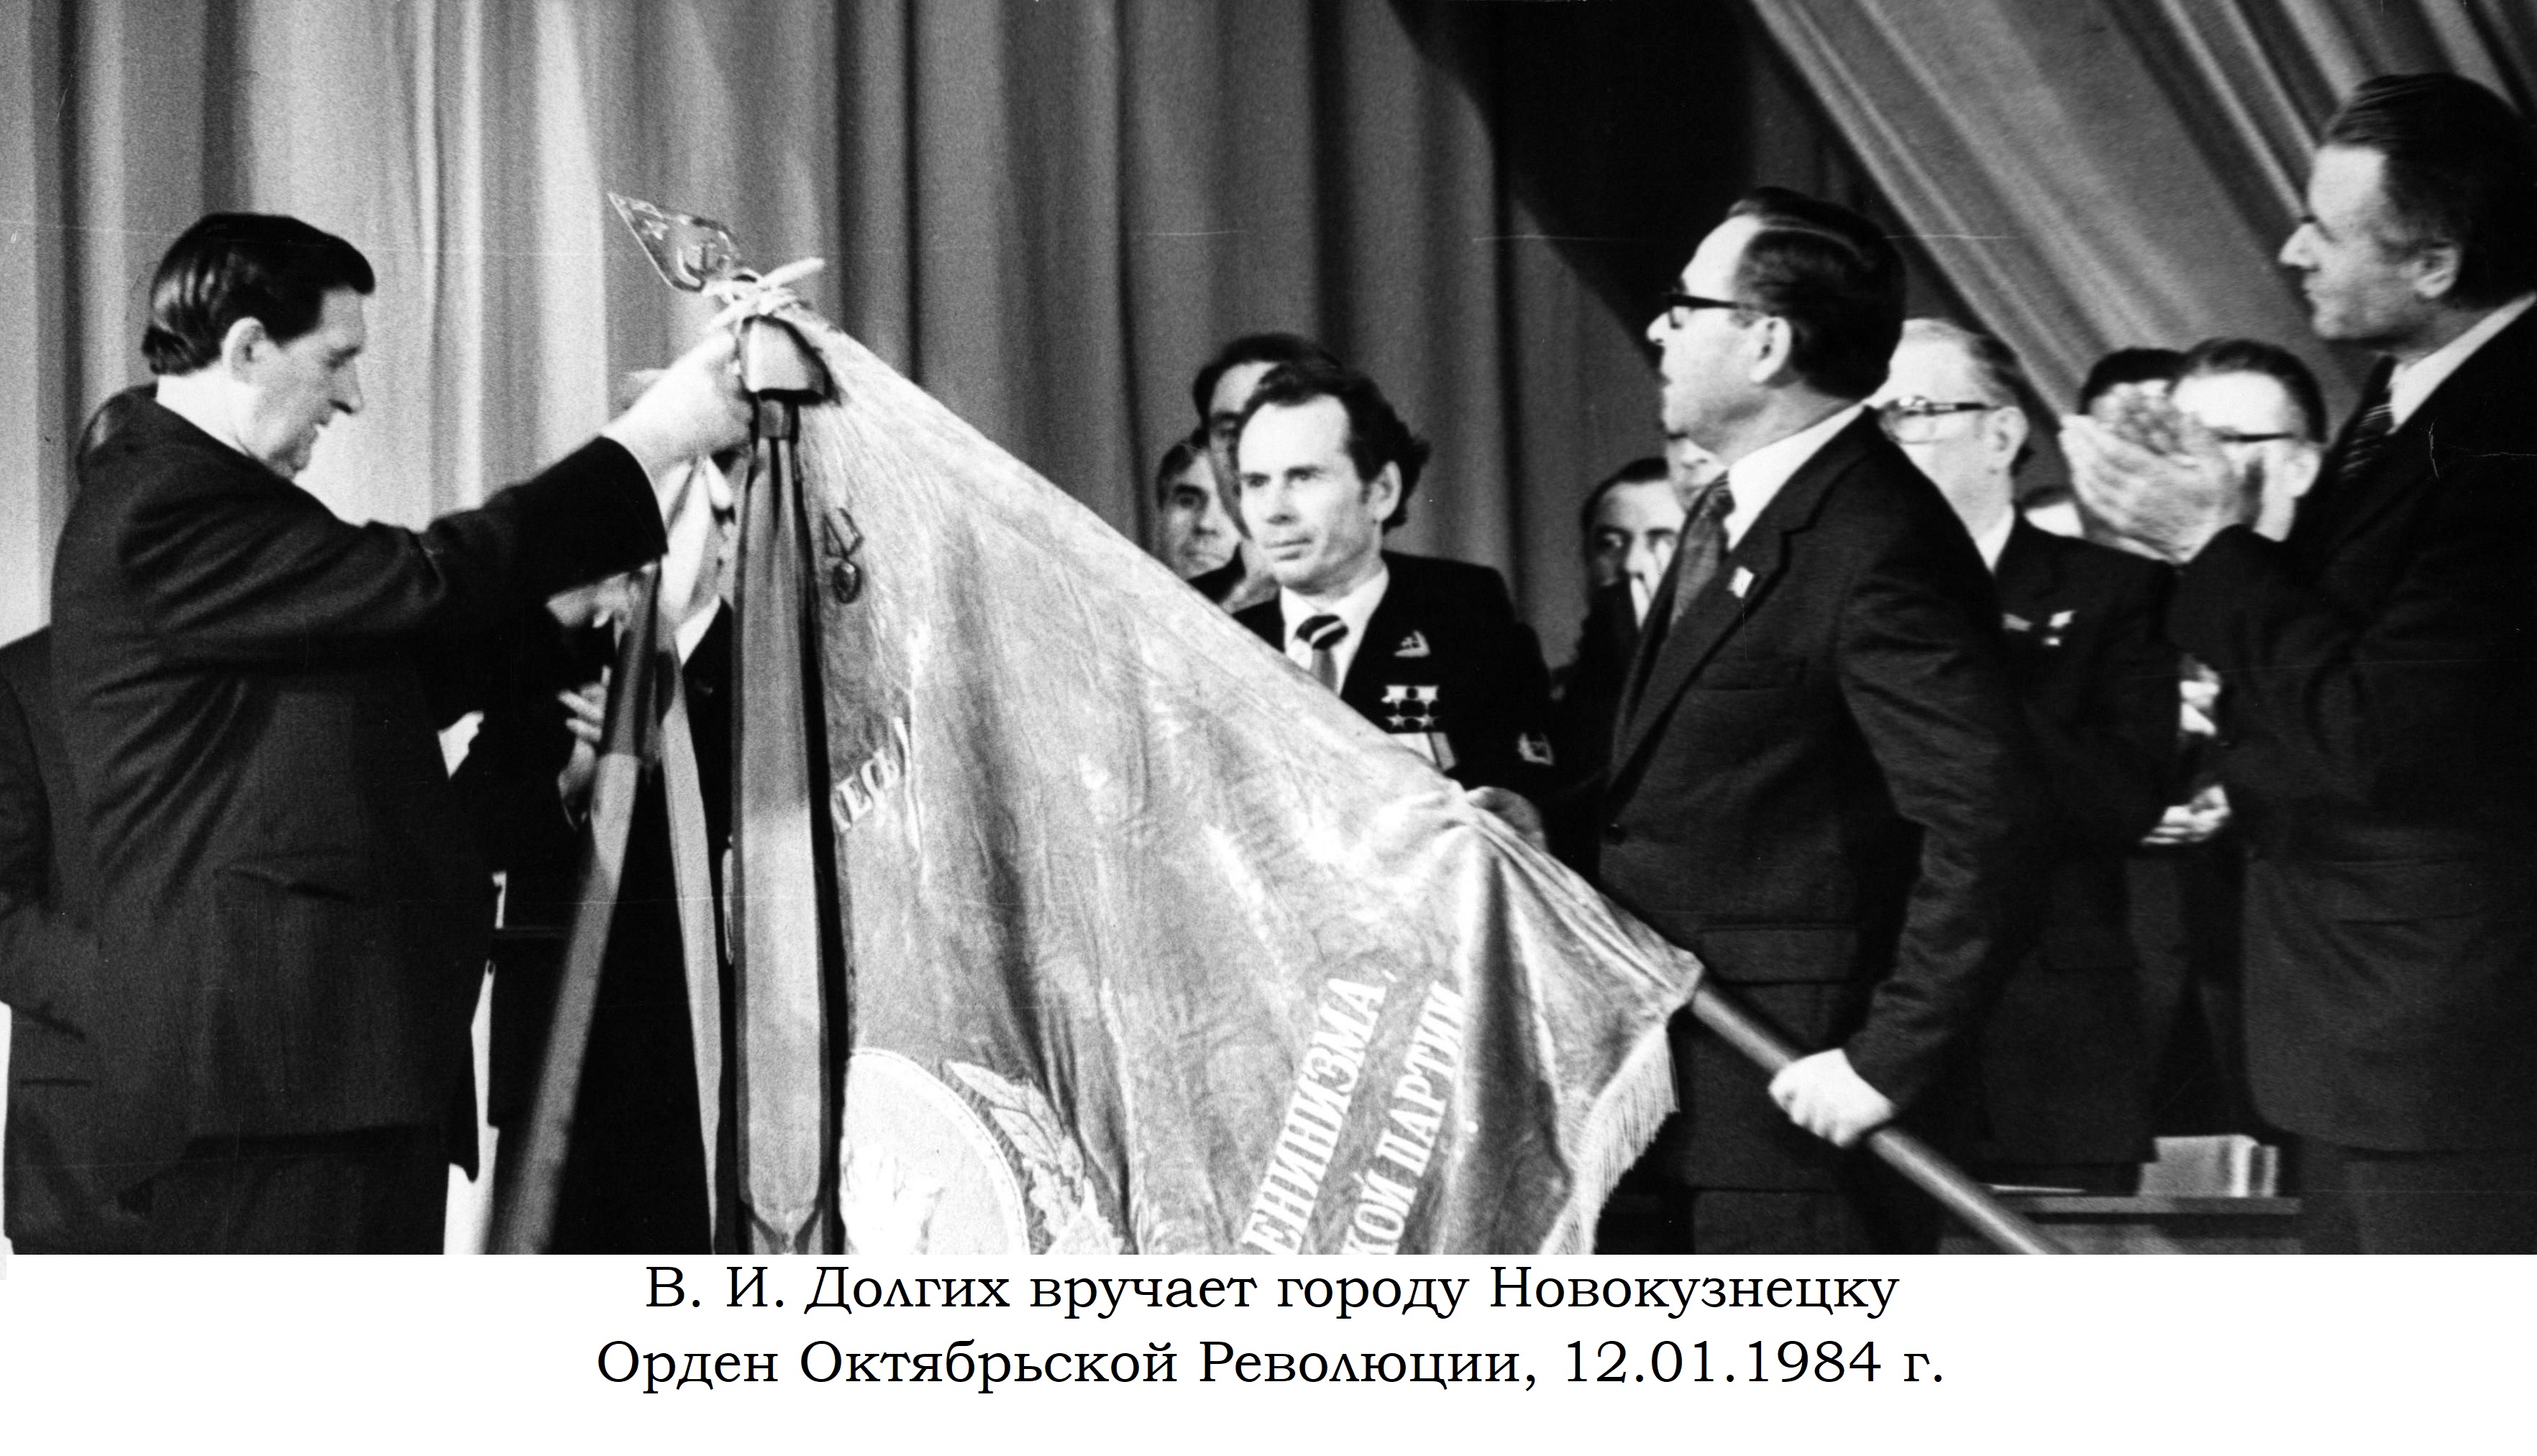 12 января 1984 года в городском драматическом театре имени С. Орджоникидзе состоялась торжественная церемония вручения городу Новокузнецку ордена Октябрьской Революции